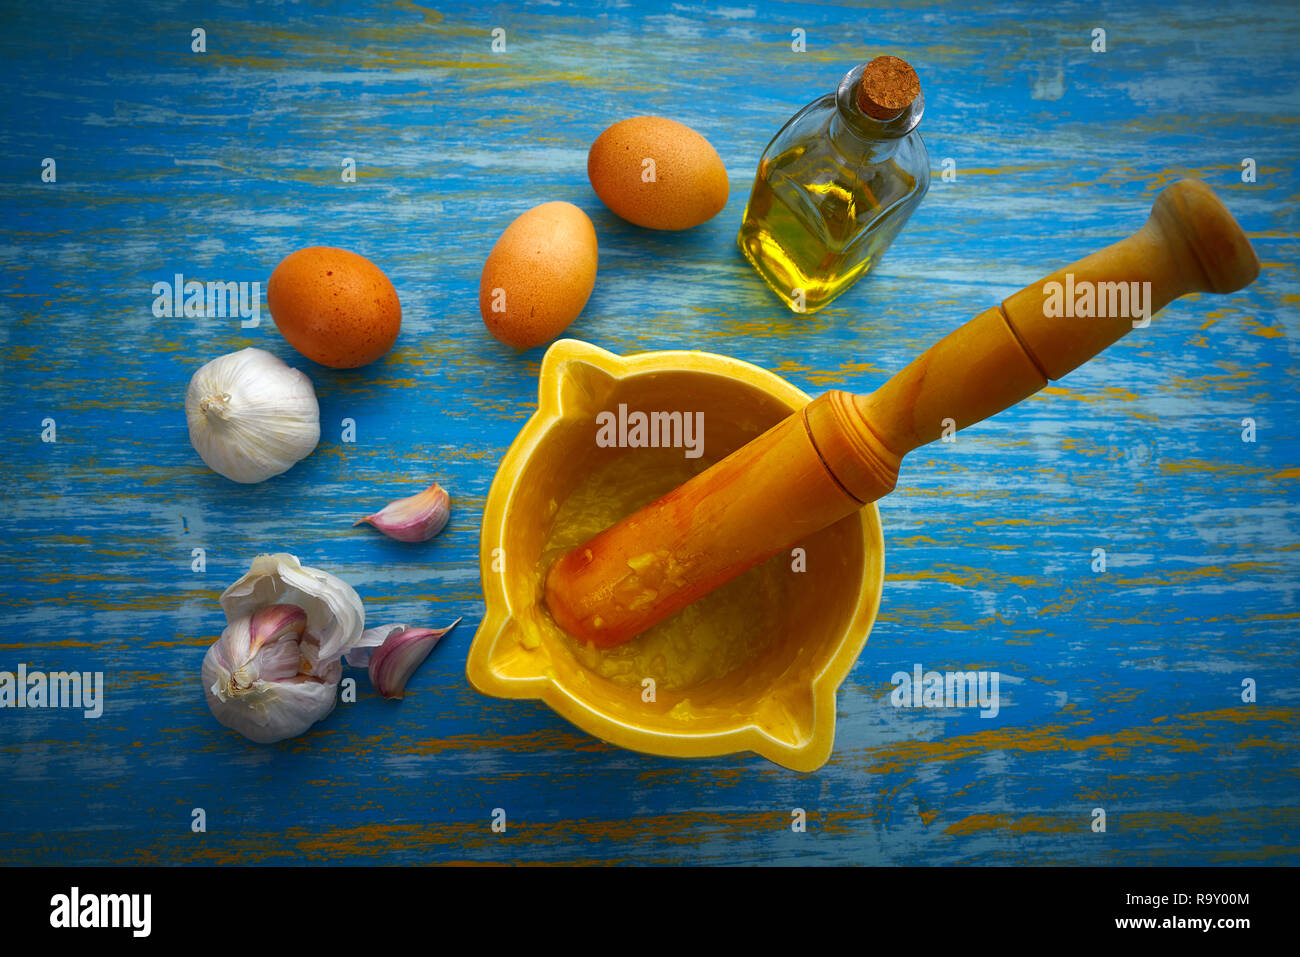 ajoaceite garlic and oil mediterramenan sauce with egg yolk Stock Photo